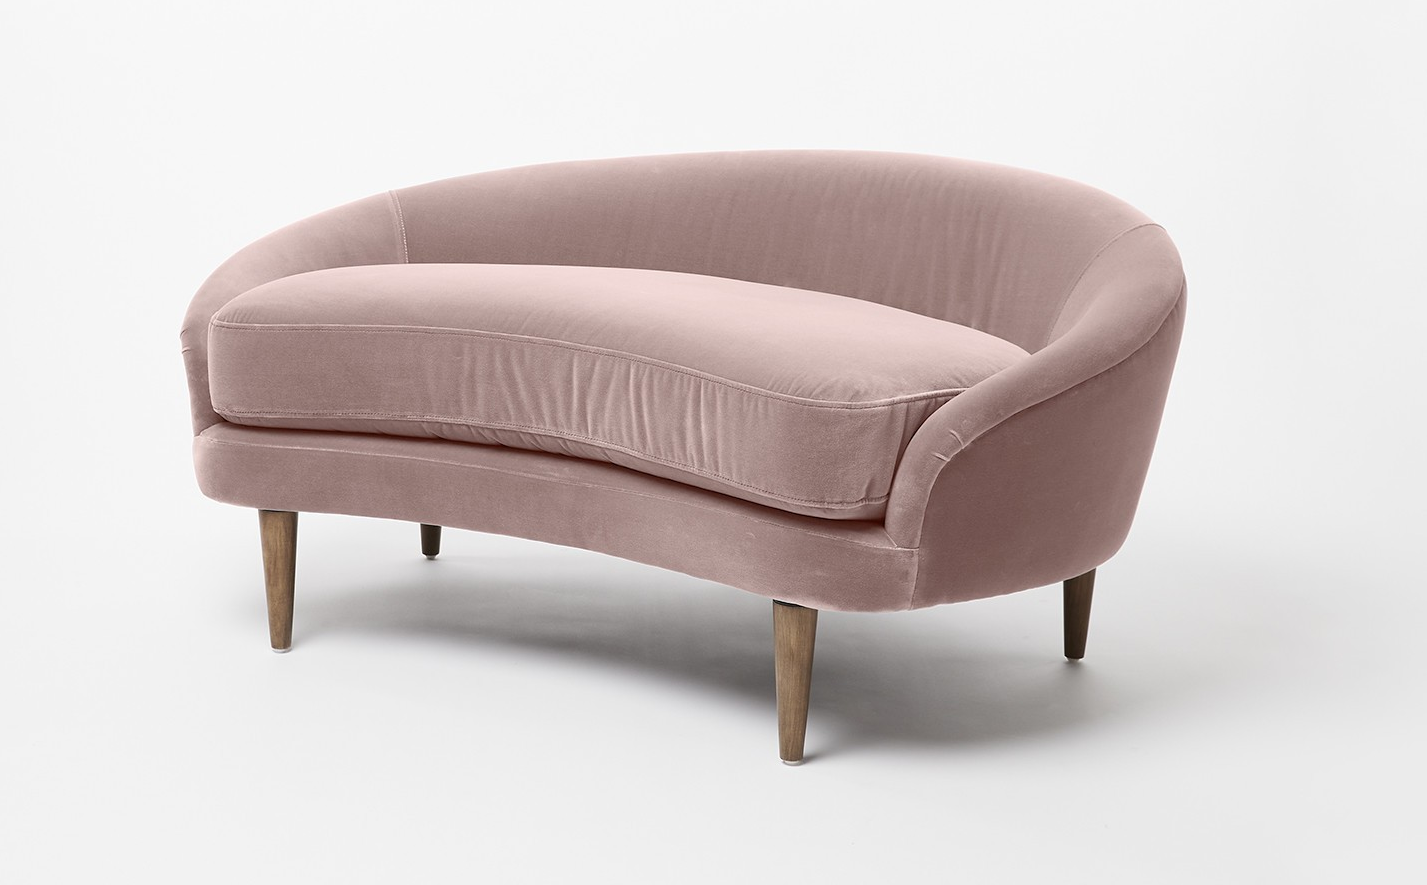 Розовый диван на ножках